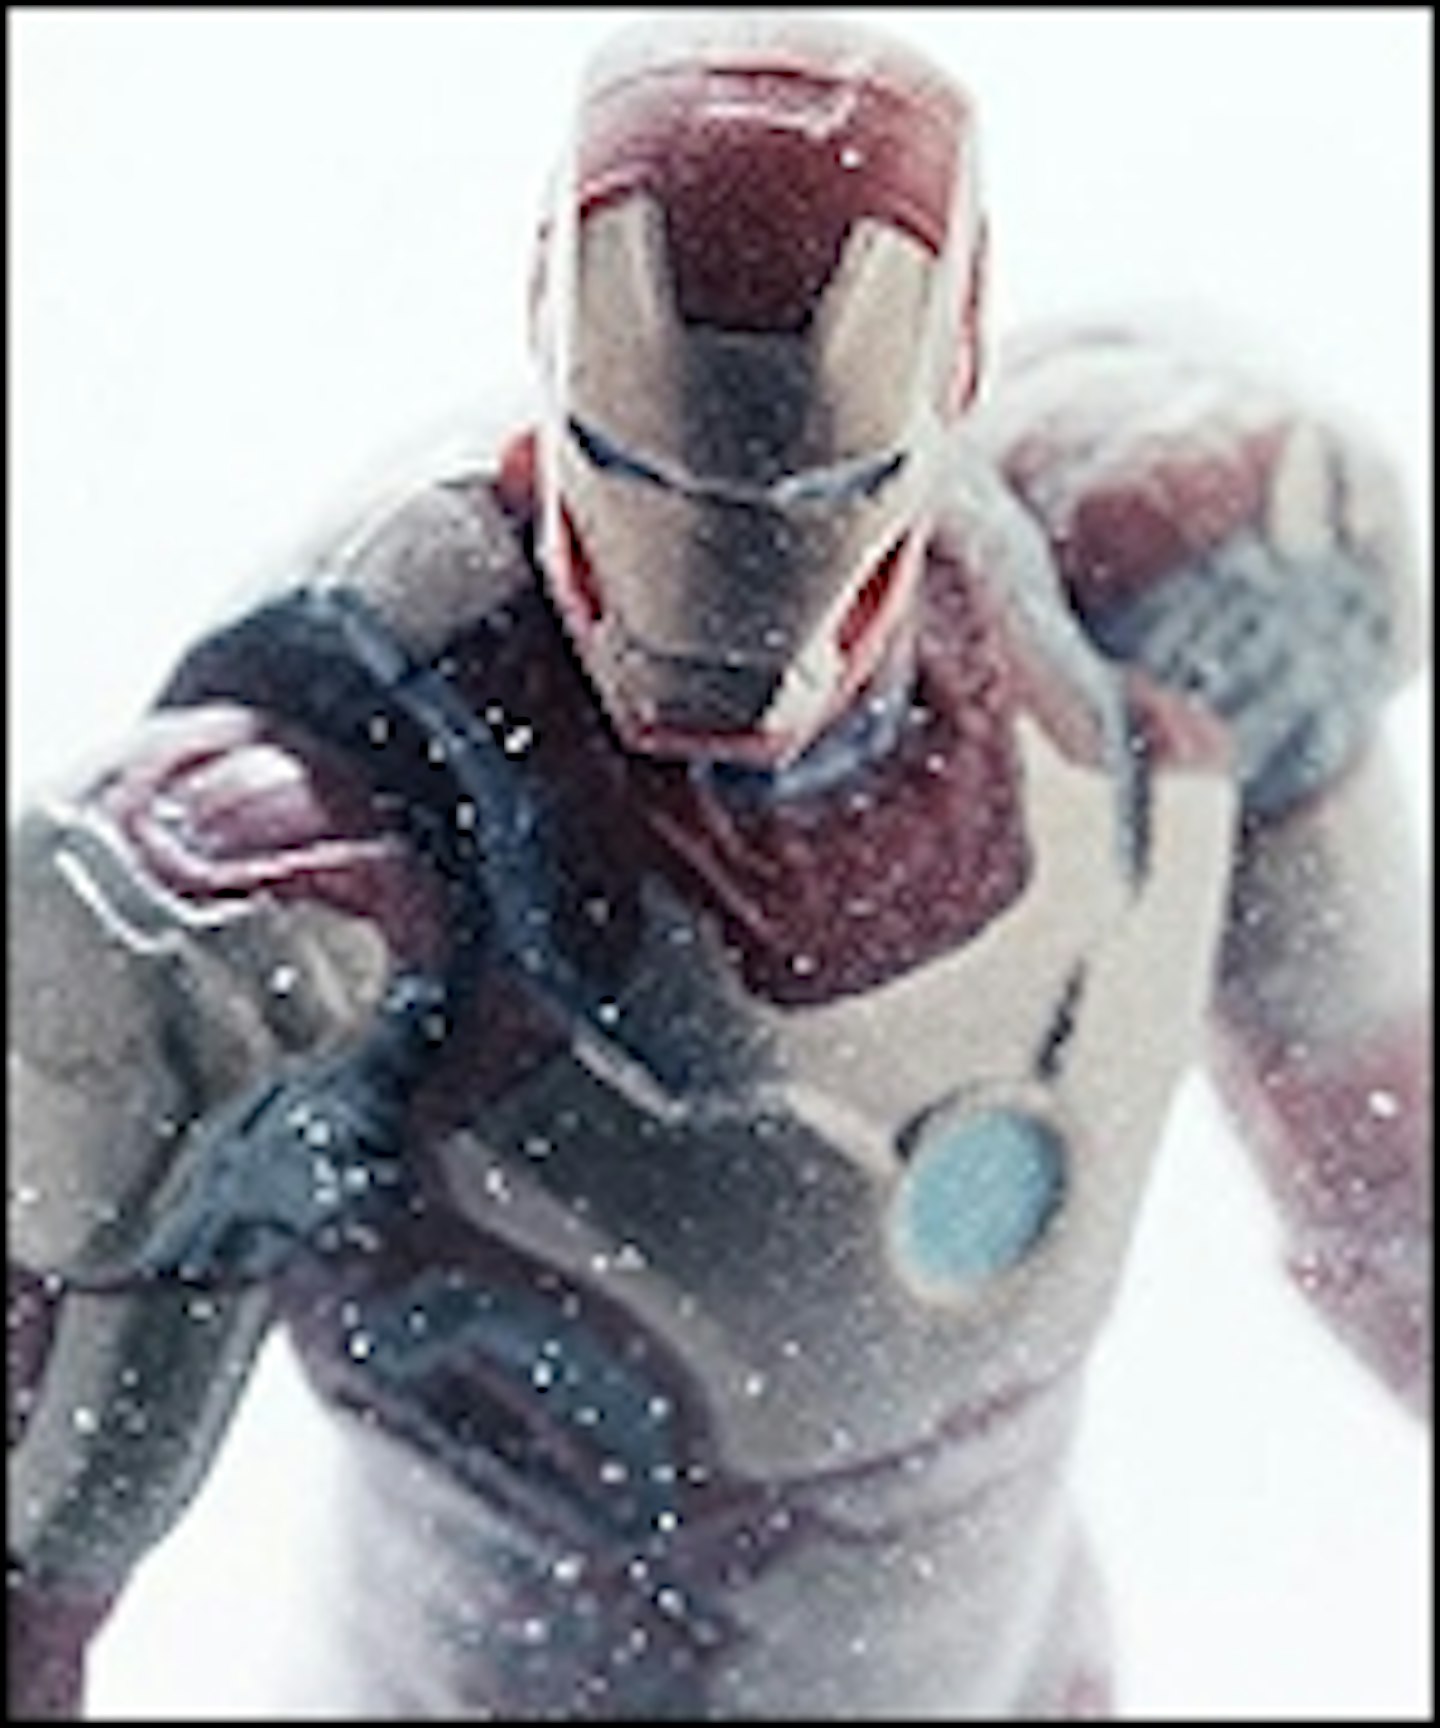 Iron Man 3 Superbowl Spot Lands